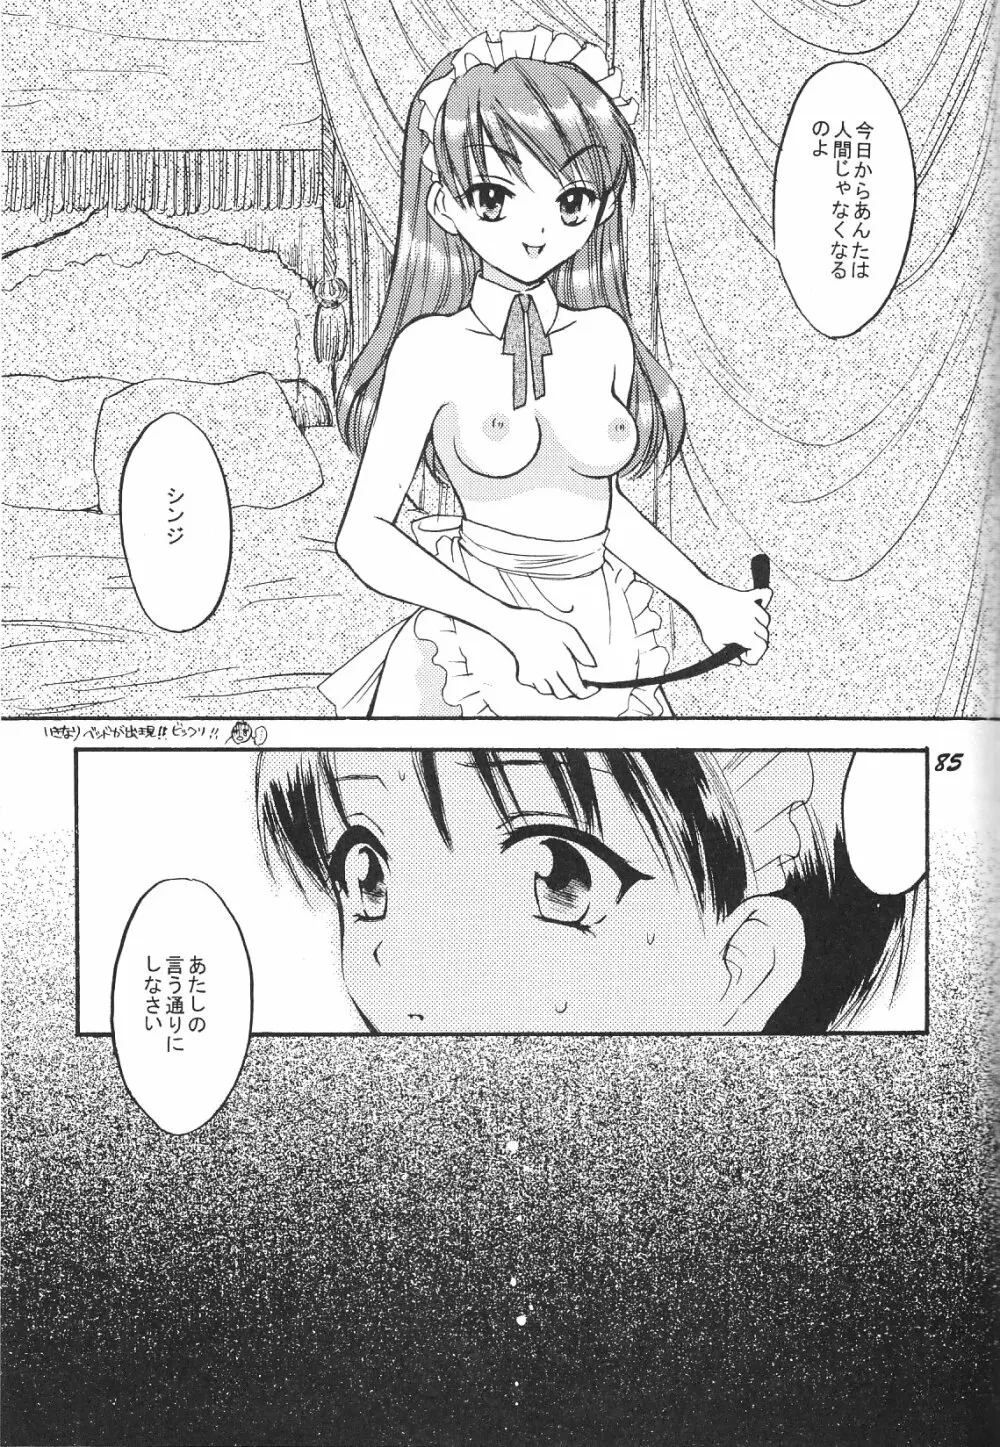 Maniac Juice 女シンジ再録集 ’96-’99 85ページ